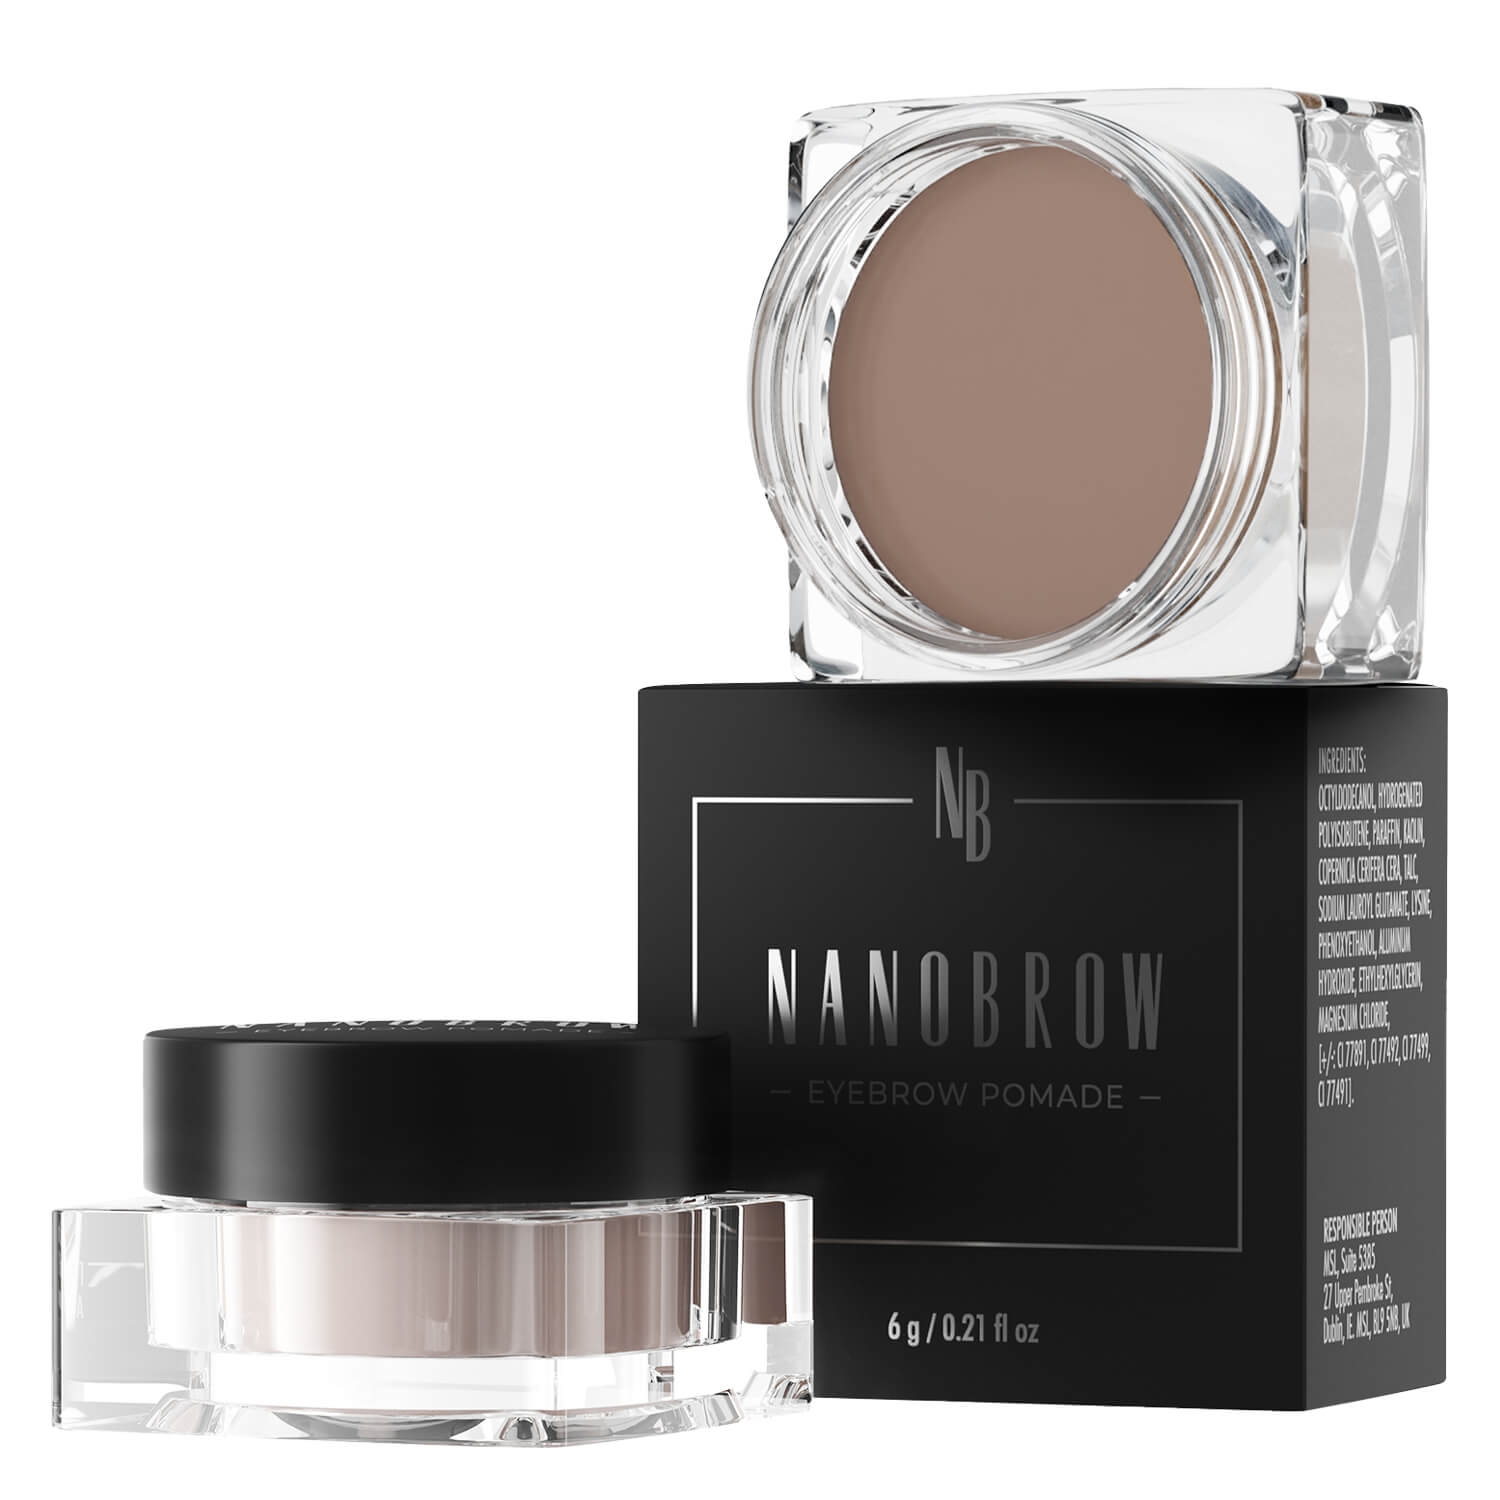 Produktbild von Nanobrow - Eyebrow Pomade Medium Brown